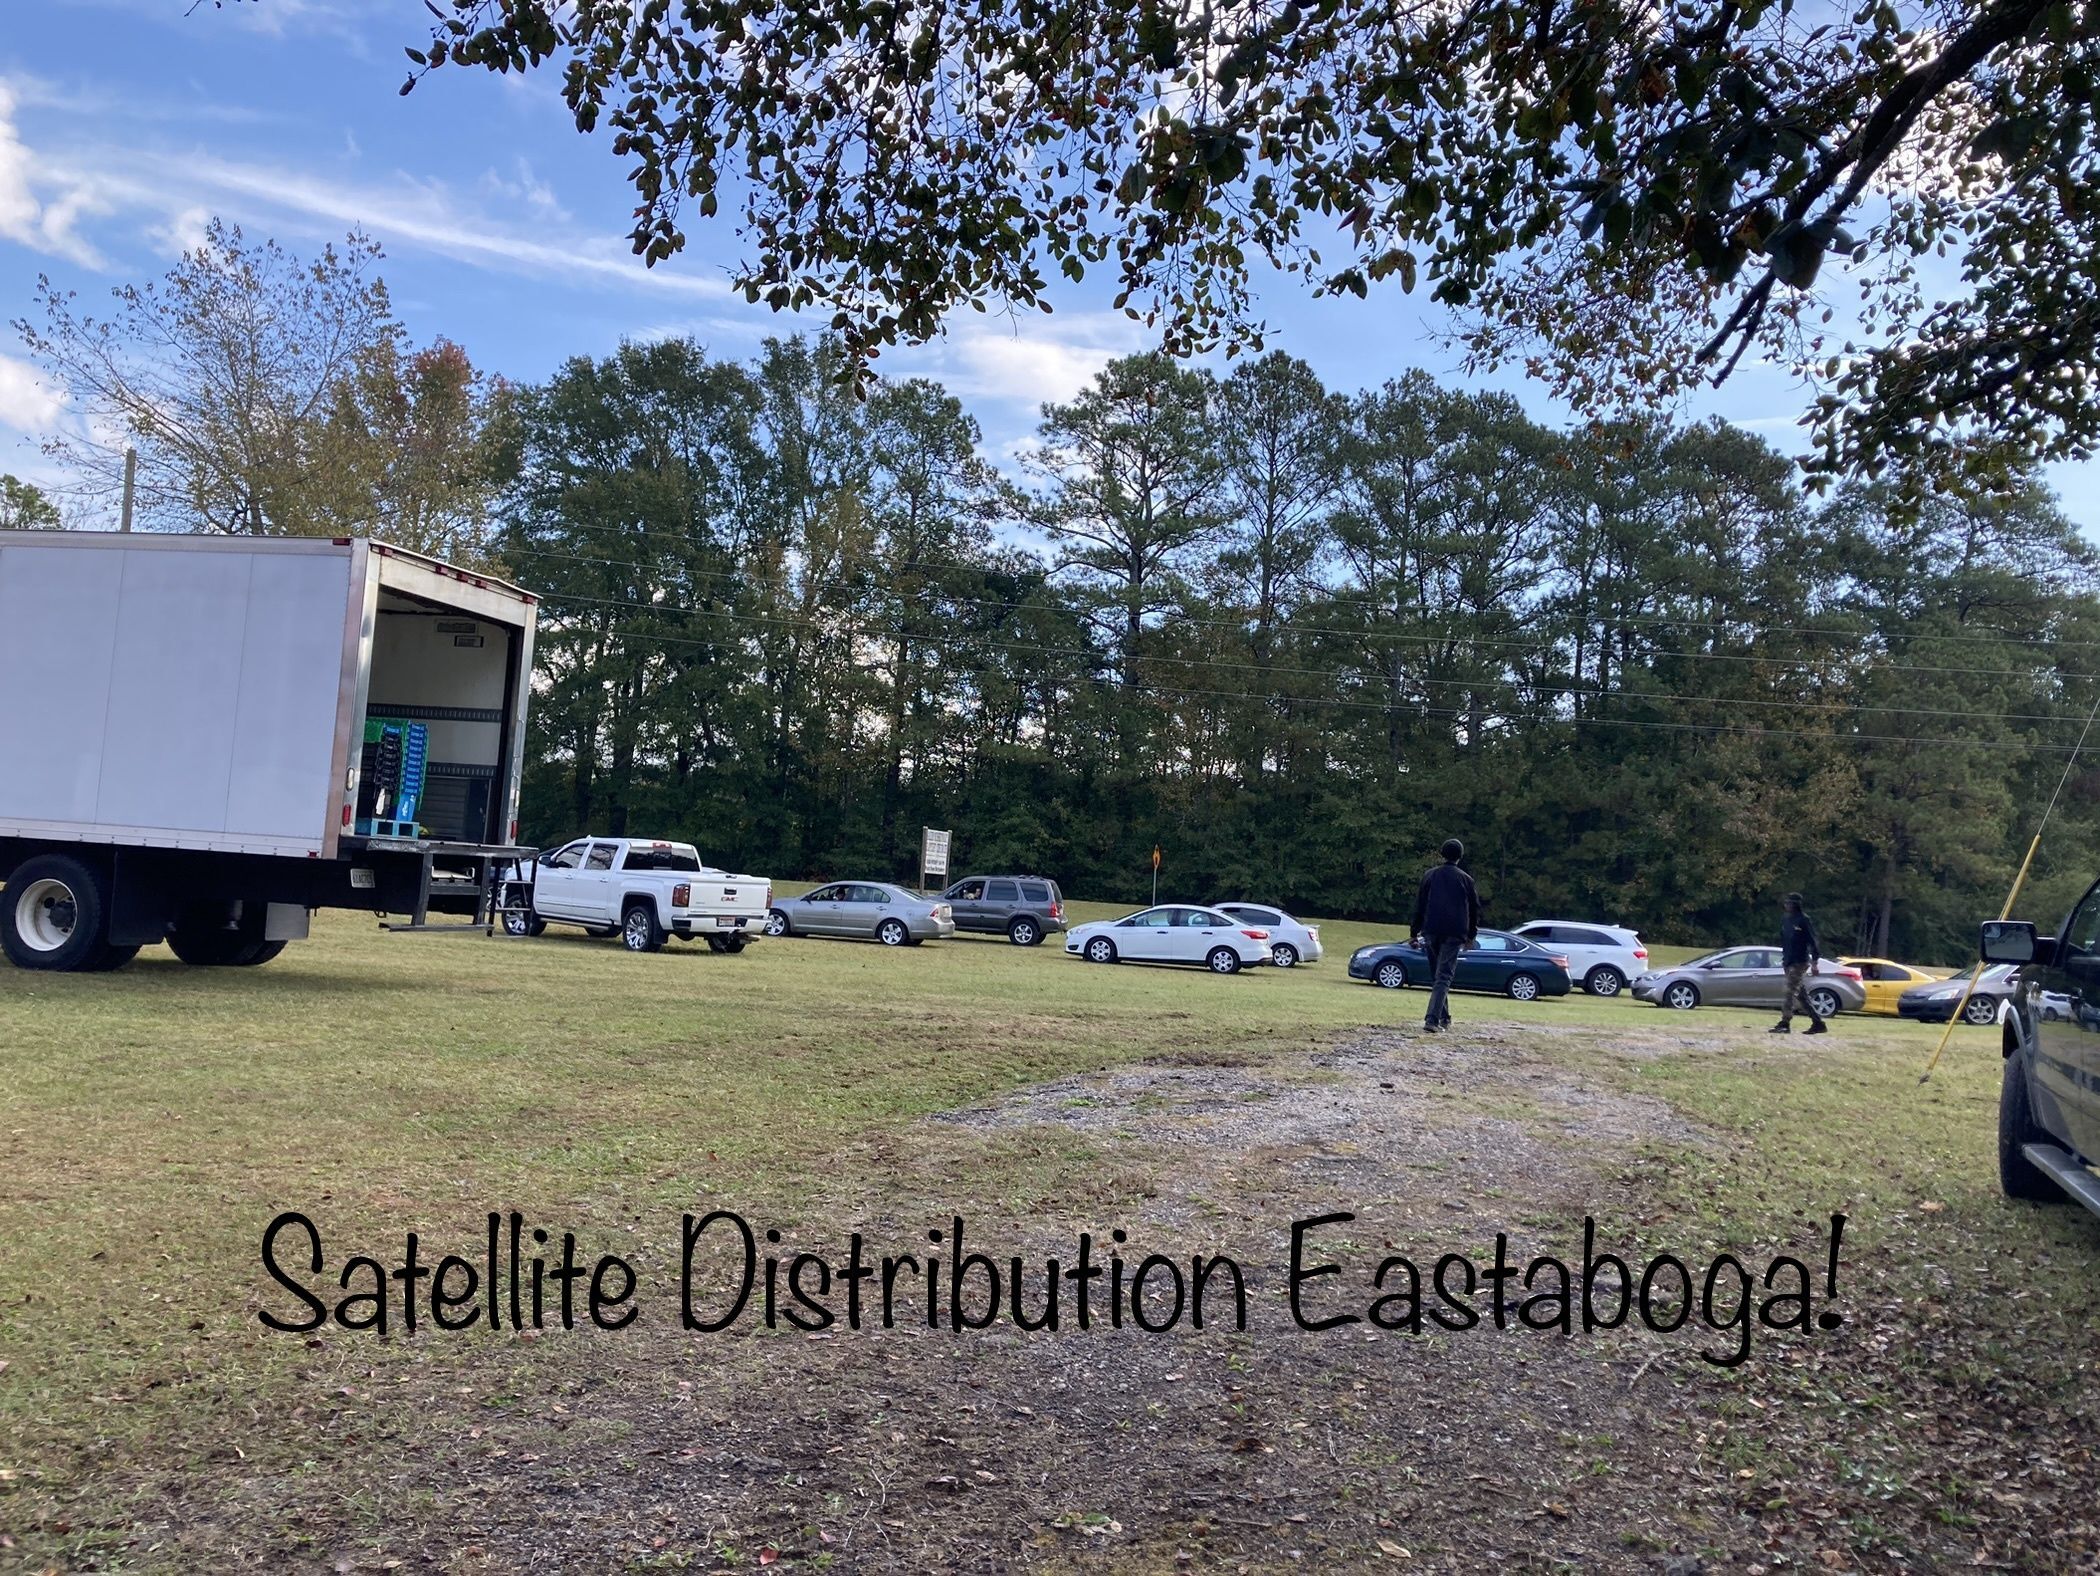 Satellite Distribution - Eastaboga